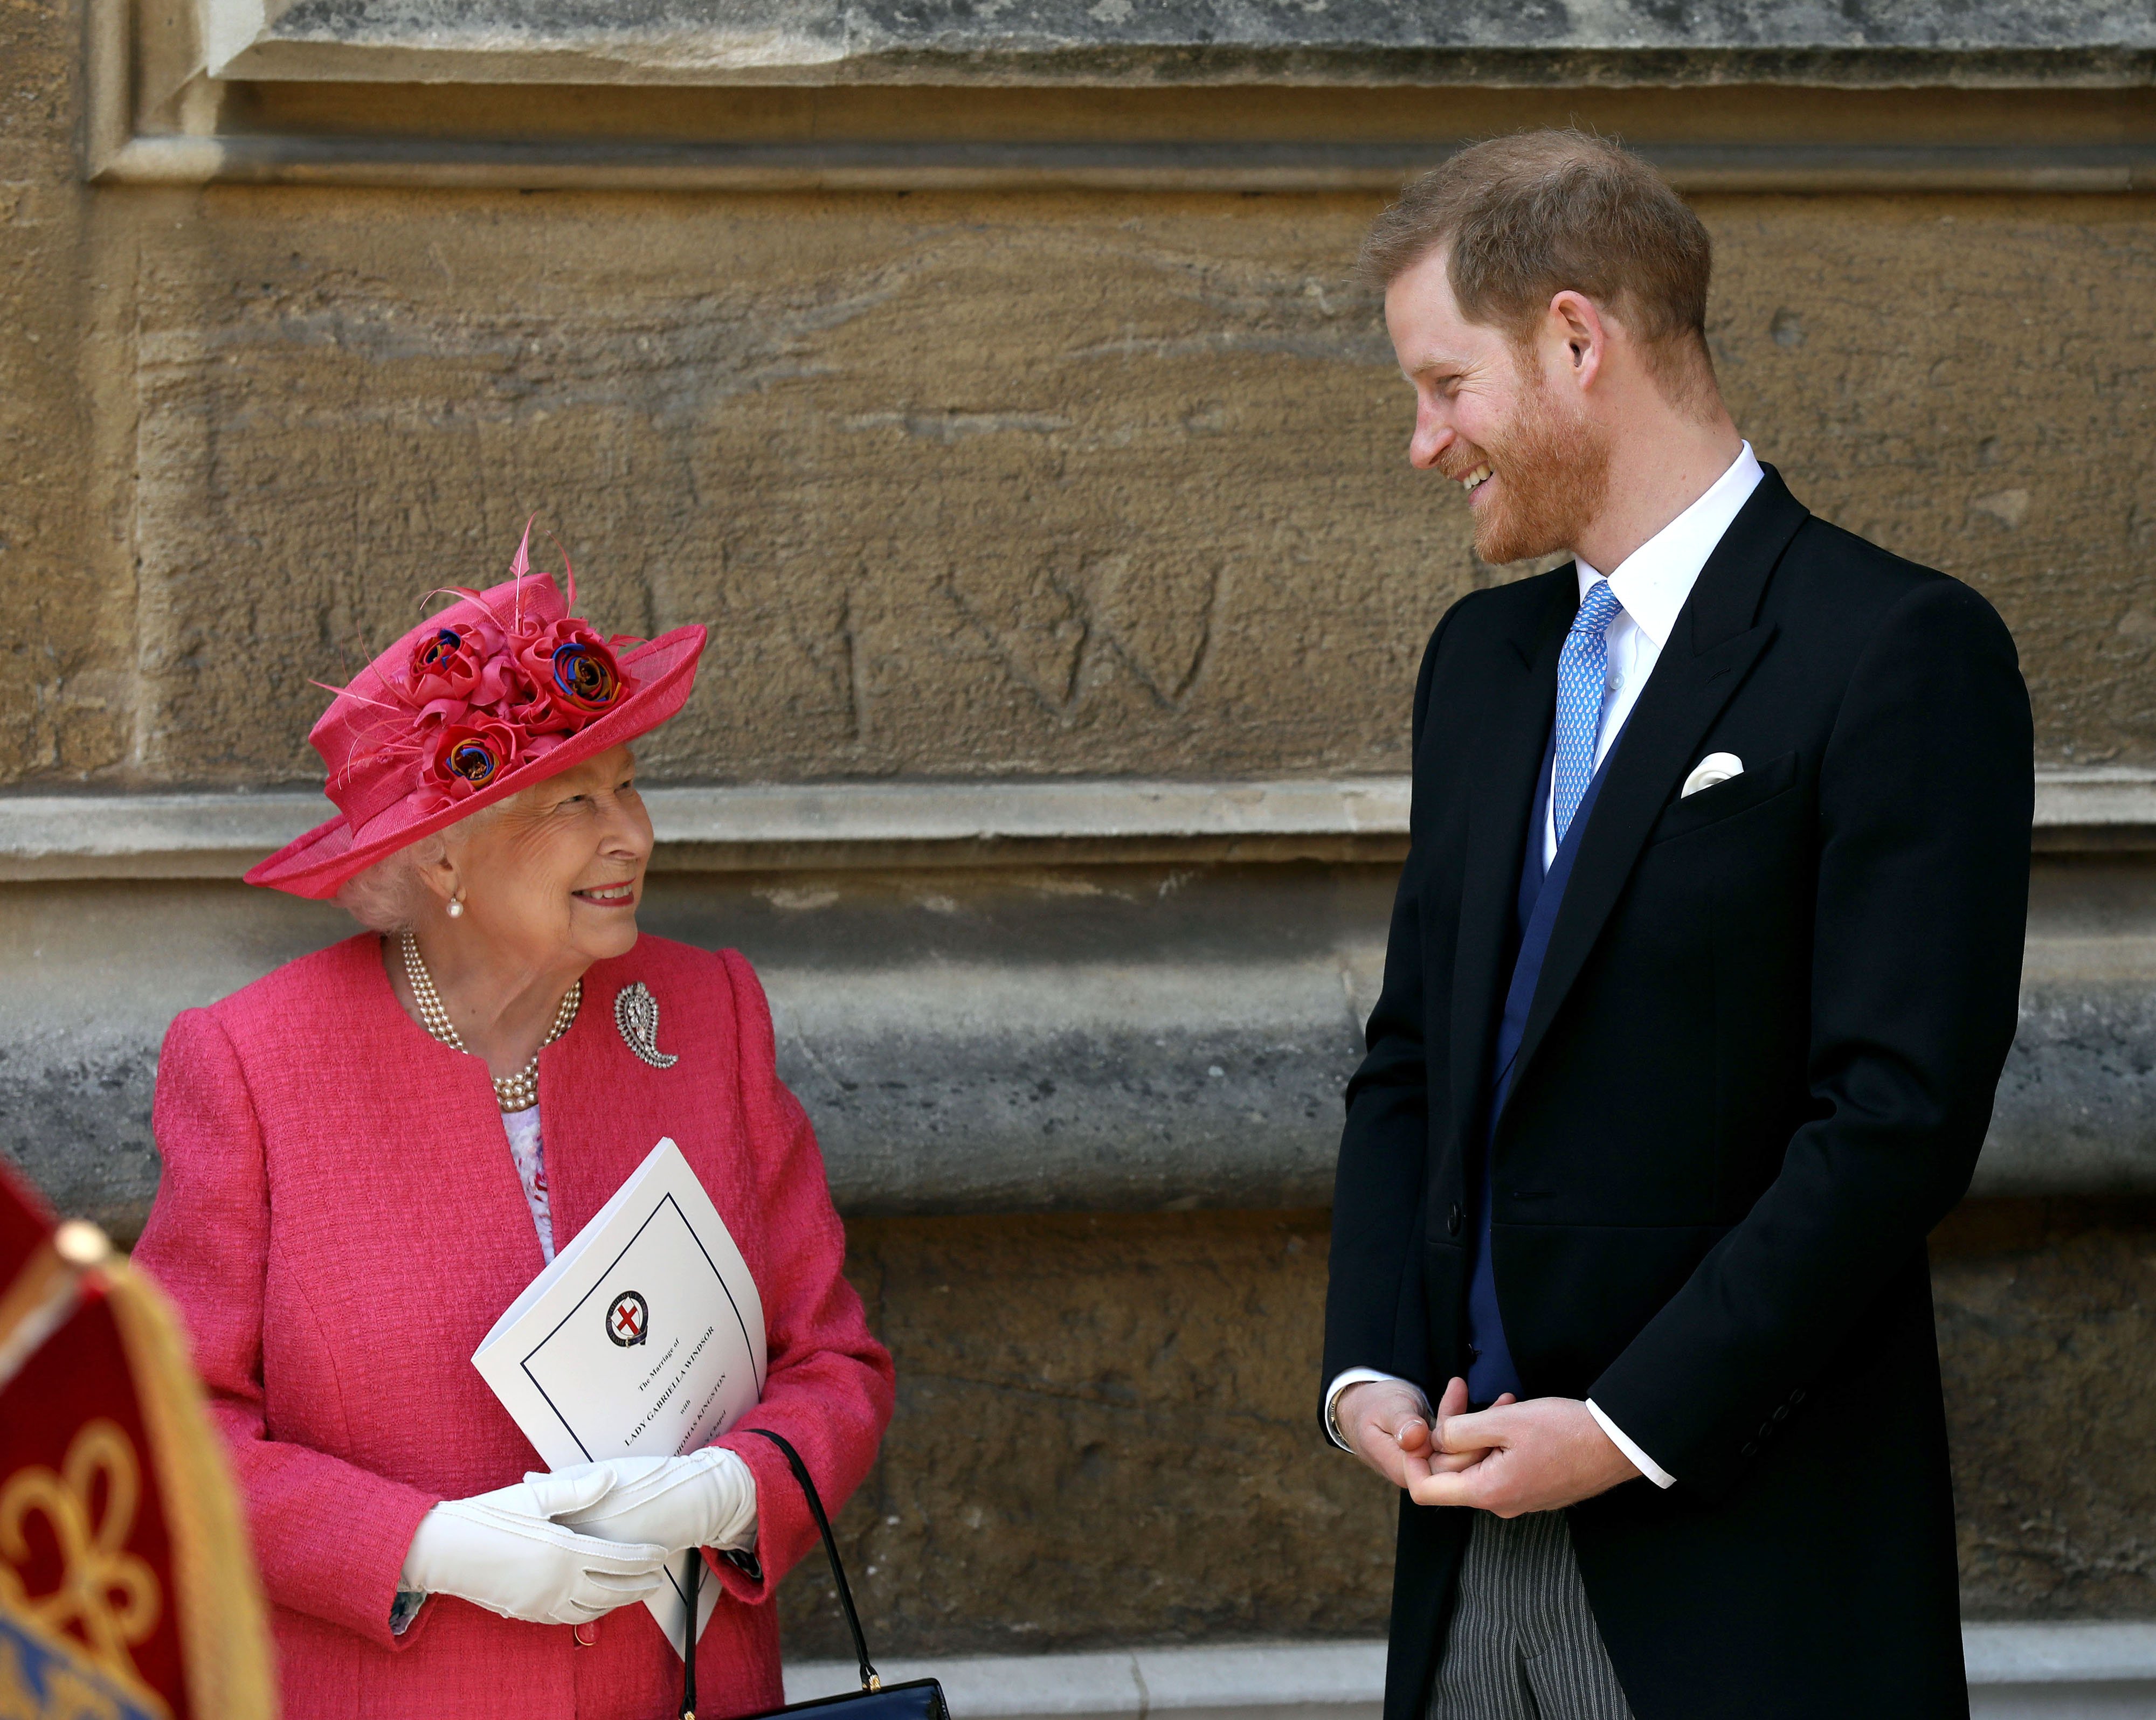 La reina Elizabeth II con el príncipe Harry, duque de Sussex, saliendo de la boda de Lady Gabriella Windsor con Thomas Kingston en la capilla de St. George, castillo de Windsor, el 18 de mayo de 2019 en Windsor, Inglaterra. | Foto: Getty Images